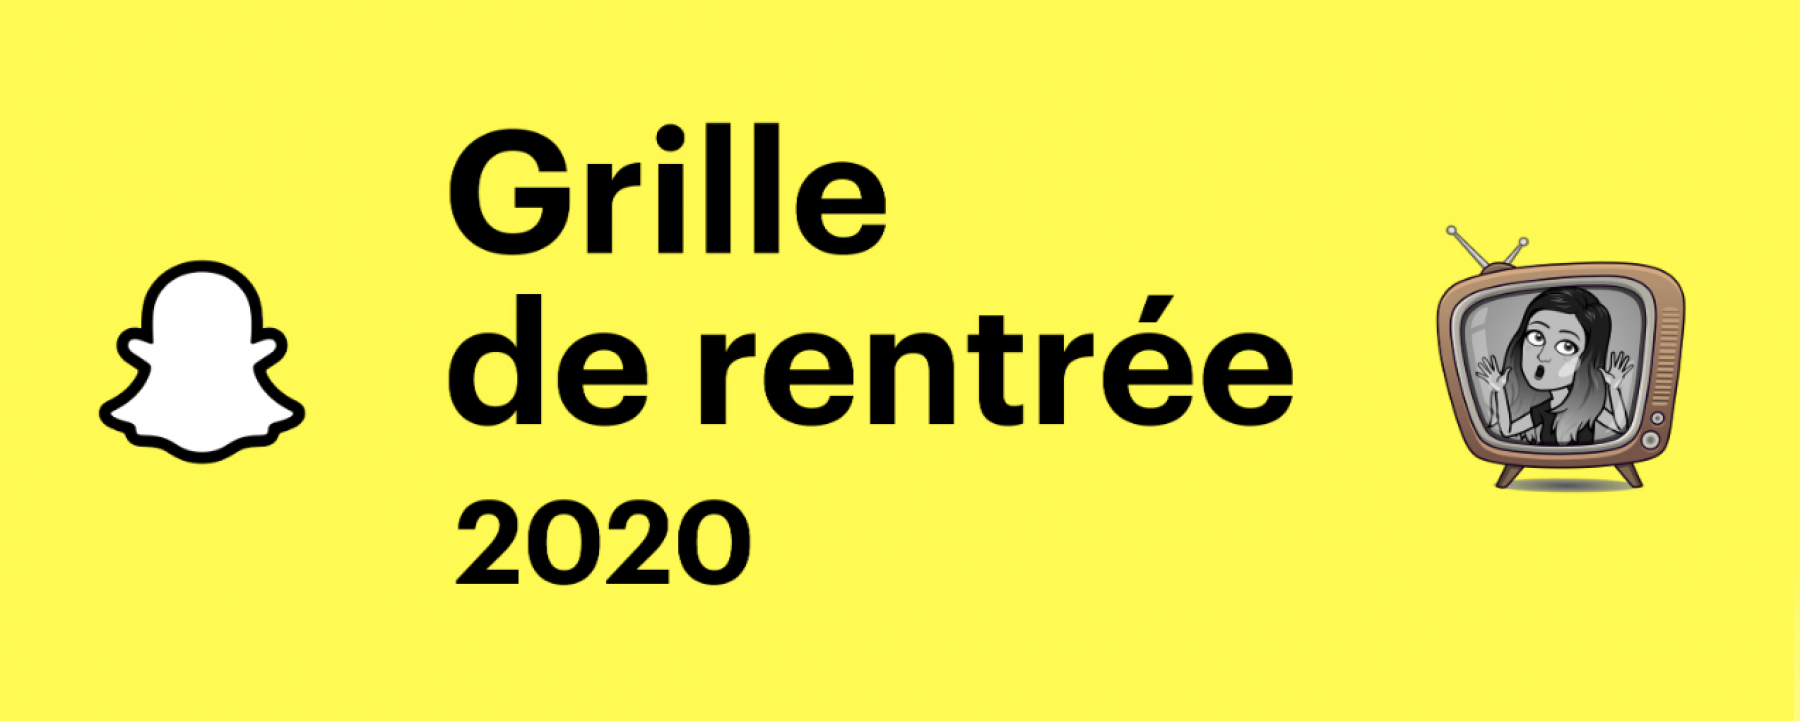 La grille de rentrée Snapchat 2020, un webcast organisé par Snap France le 30 septembre